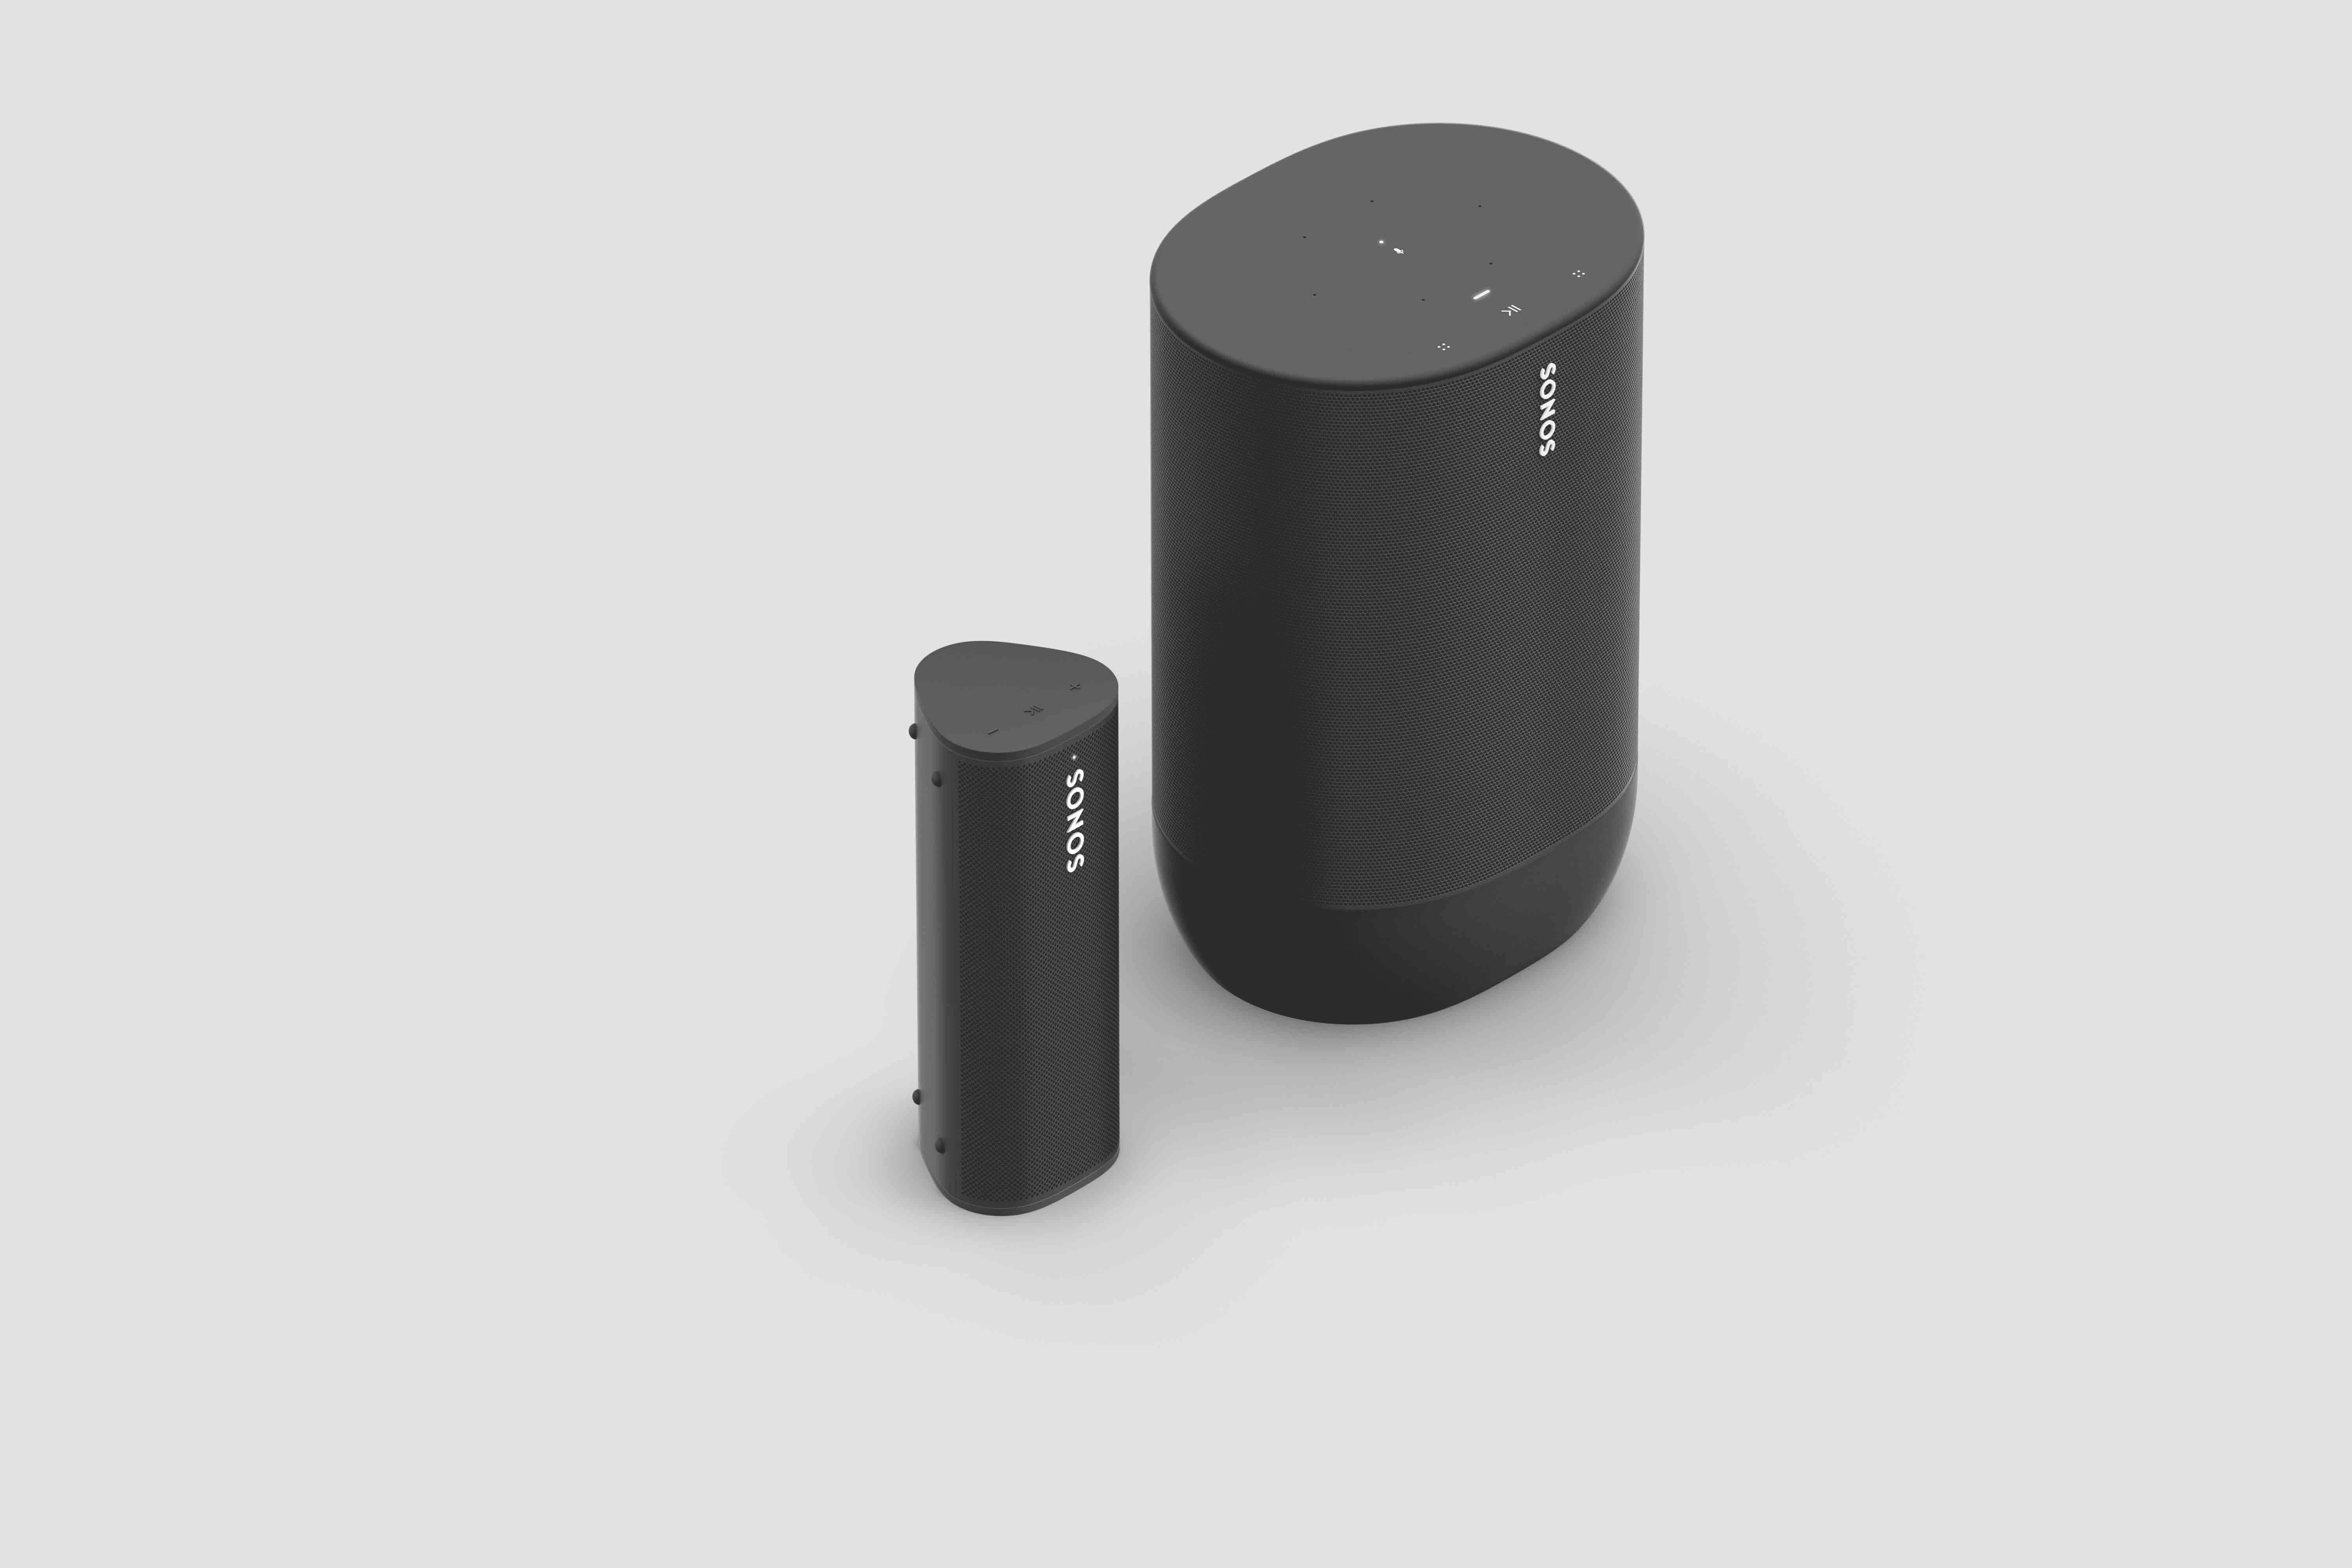 Beundringsværdig hovedlandet Stræde Meet Sonos Roam, the ultra-portable smart speaker | Sonos Community